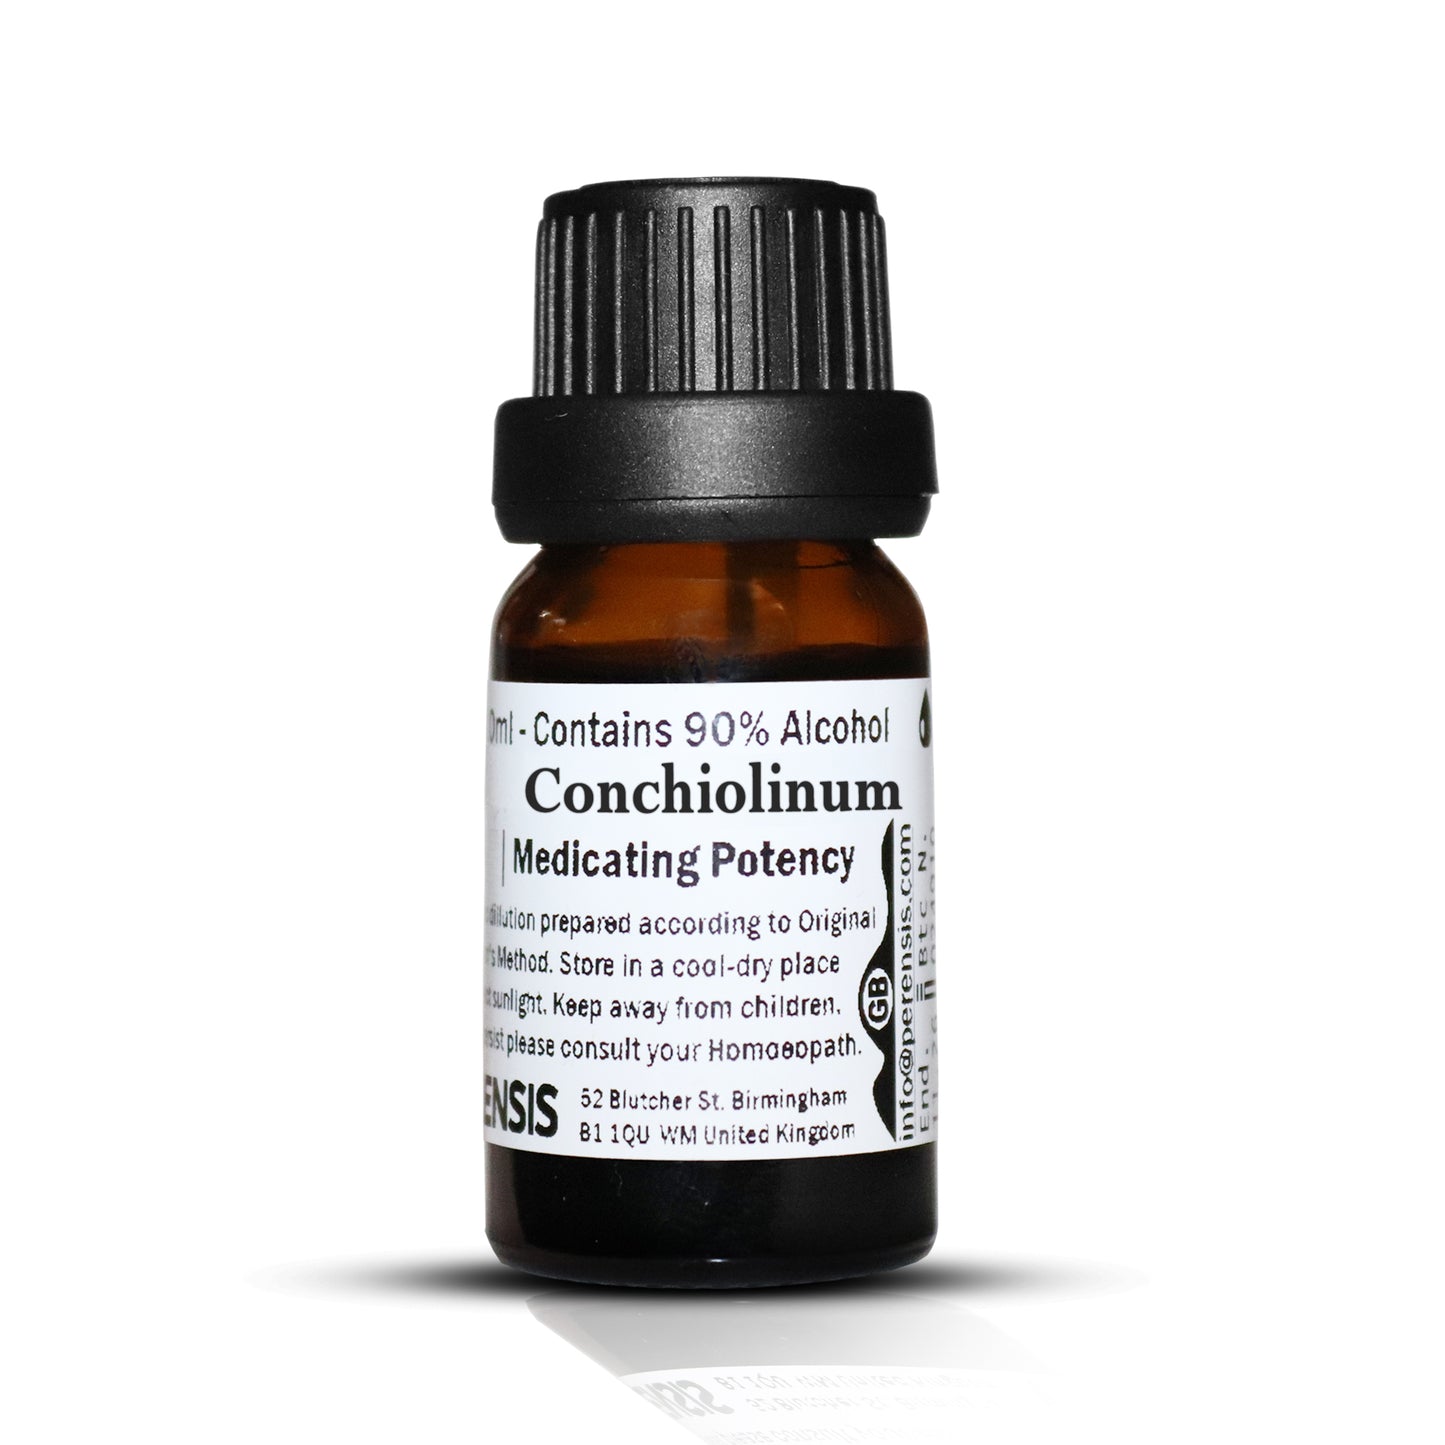 Conchiolinum